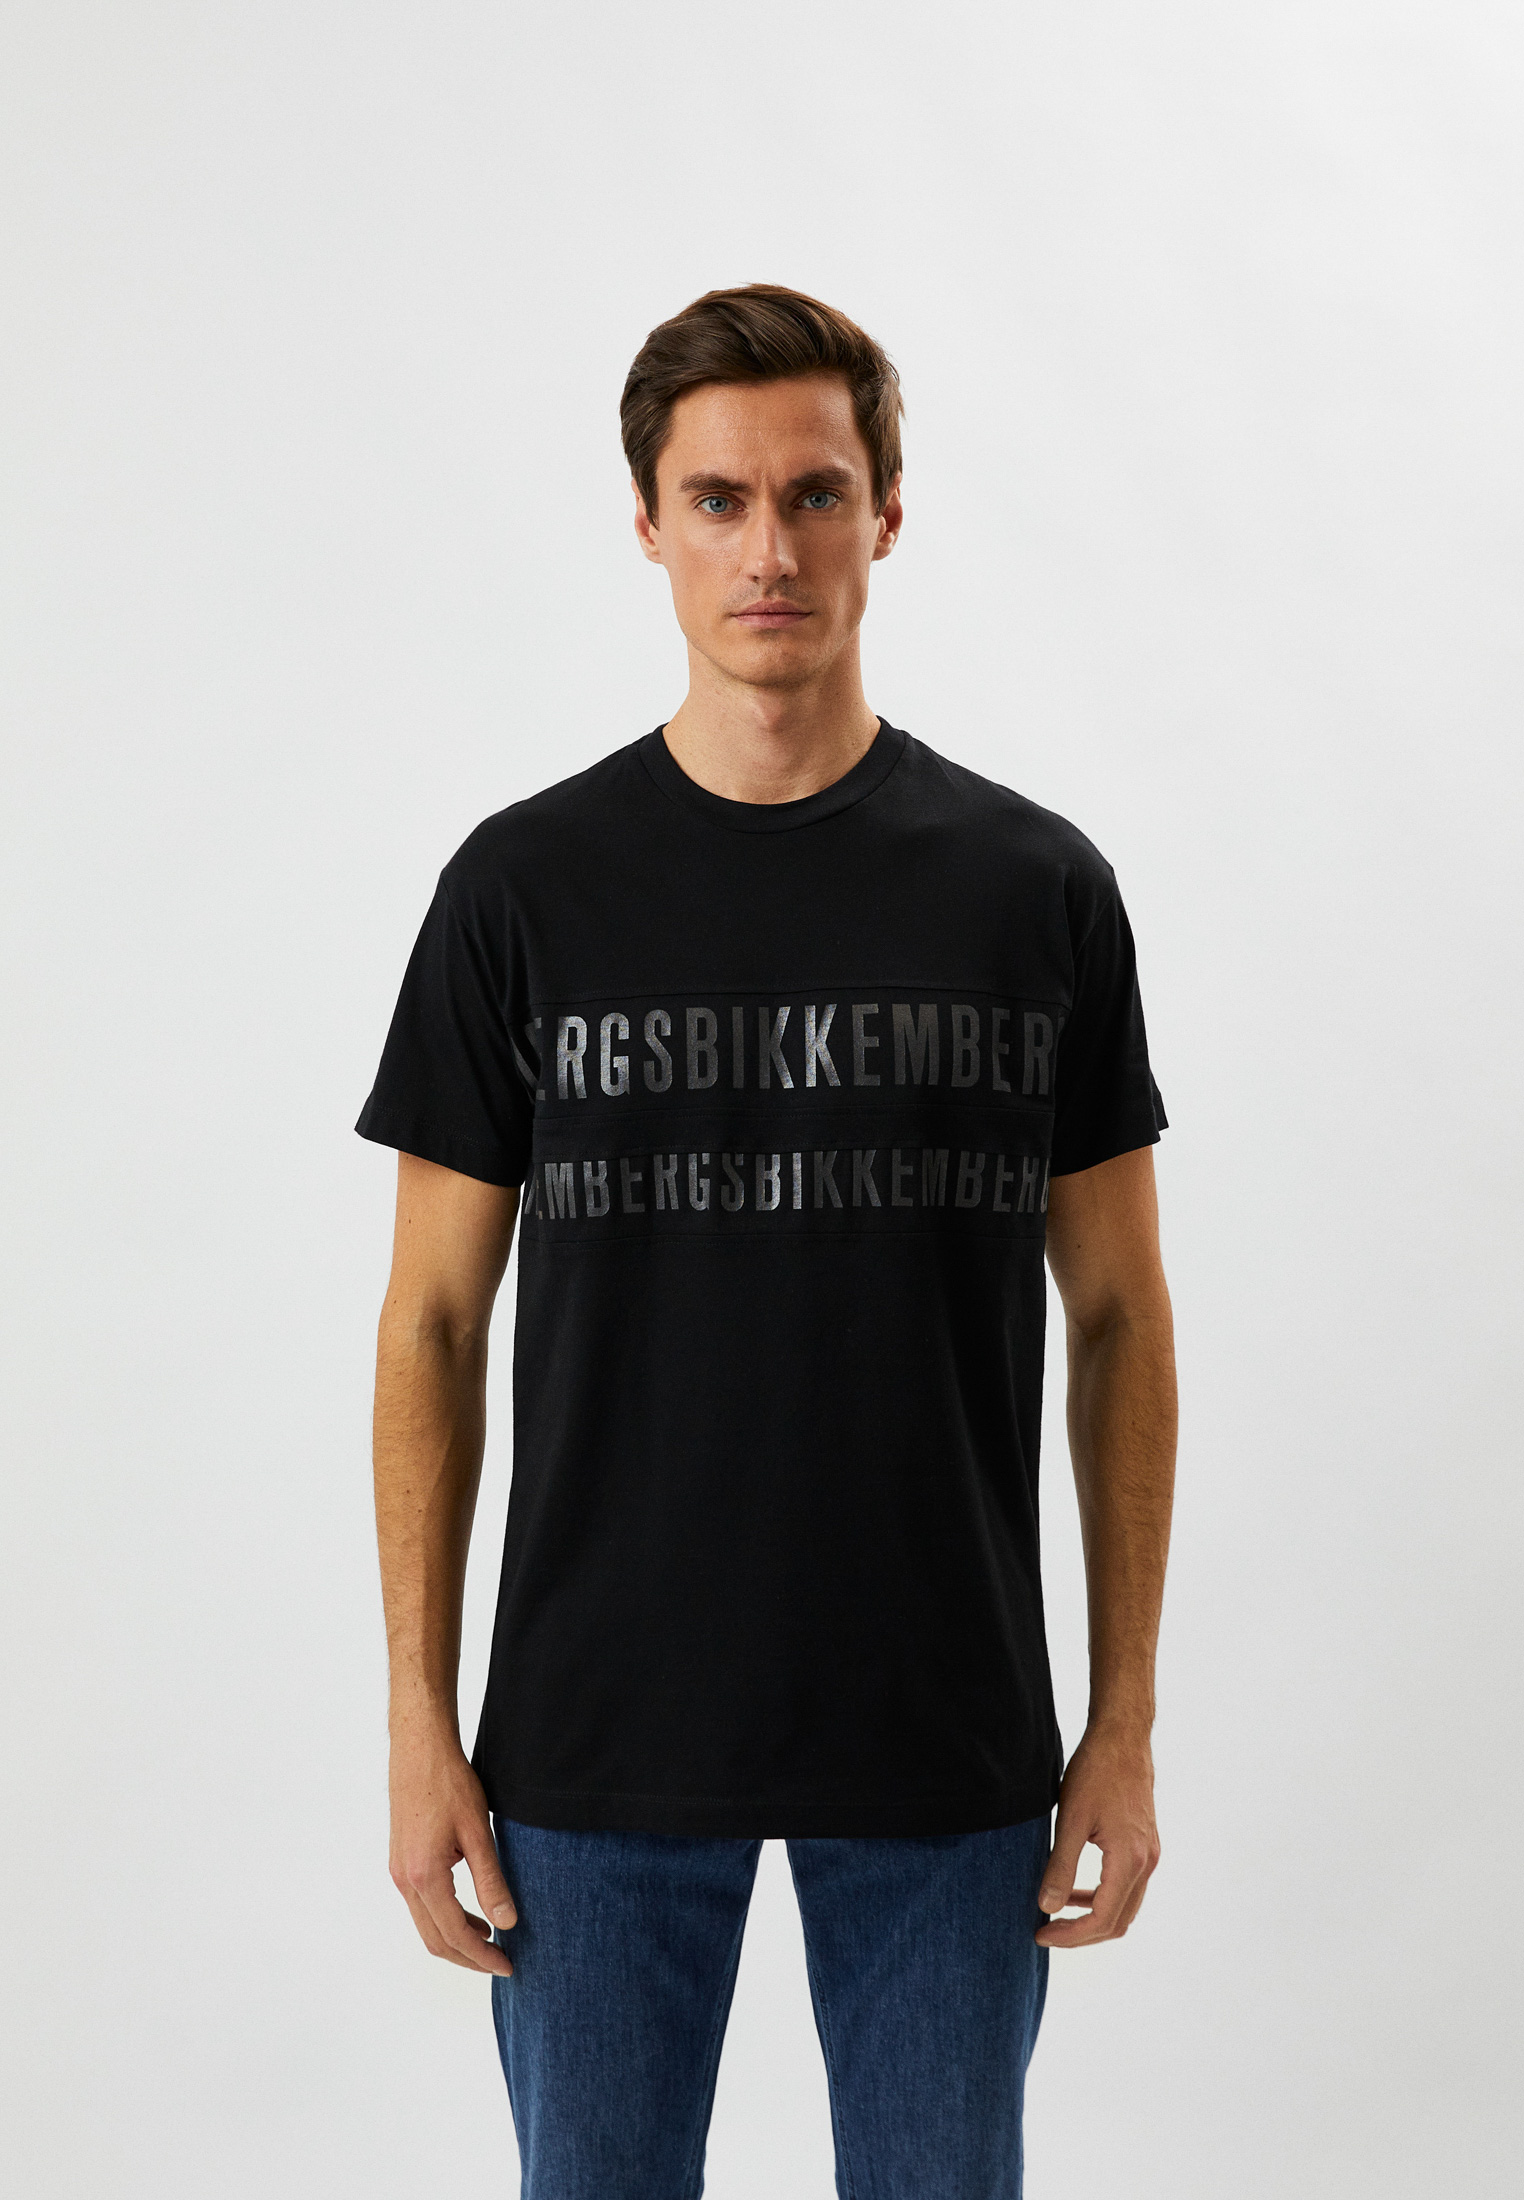 Мужская футболка Bikkembergs (Биккембергс) C 4 127 80 M 3876